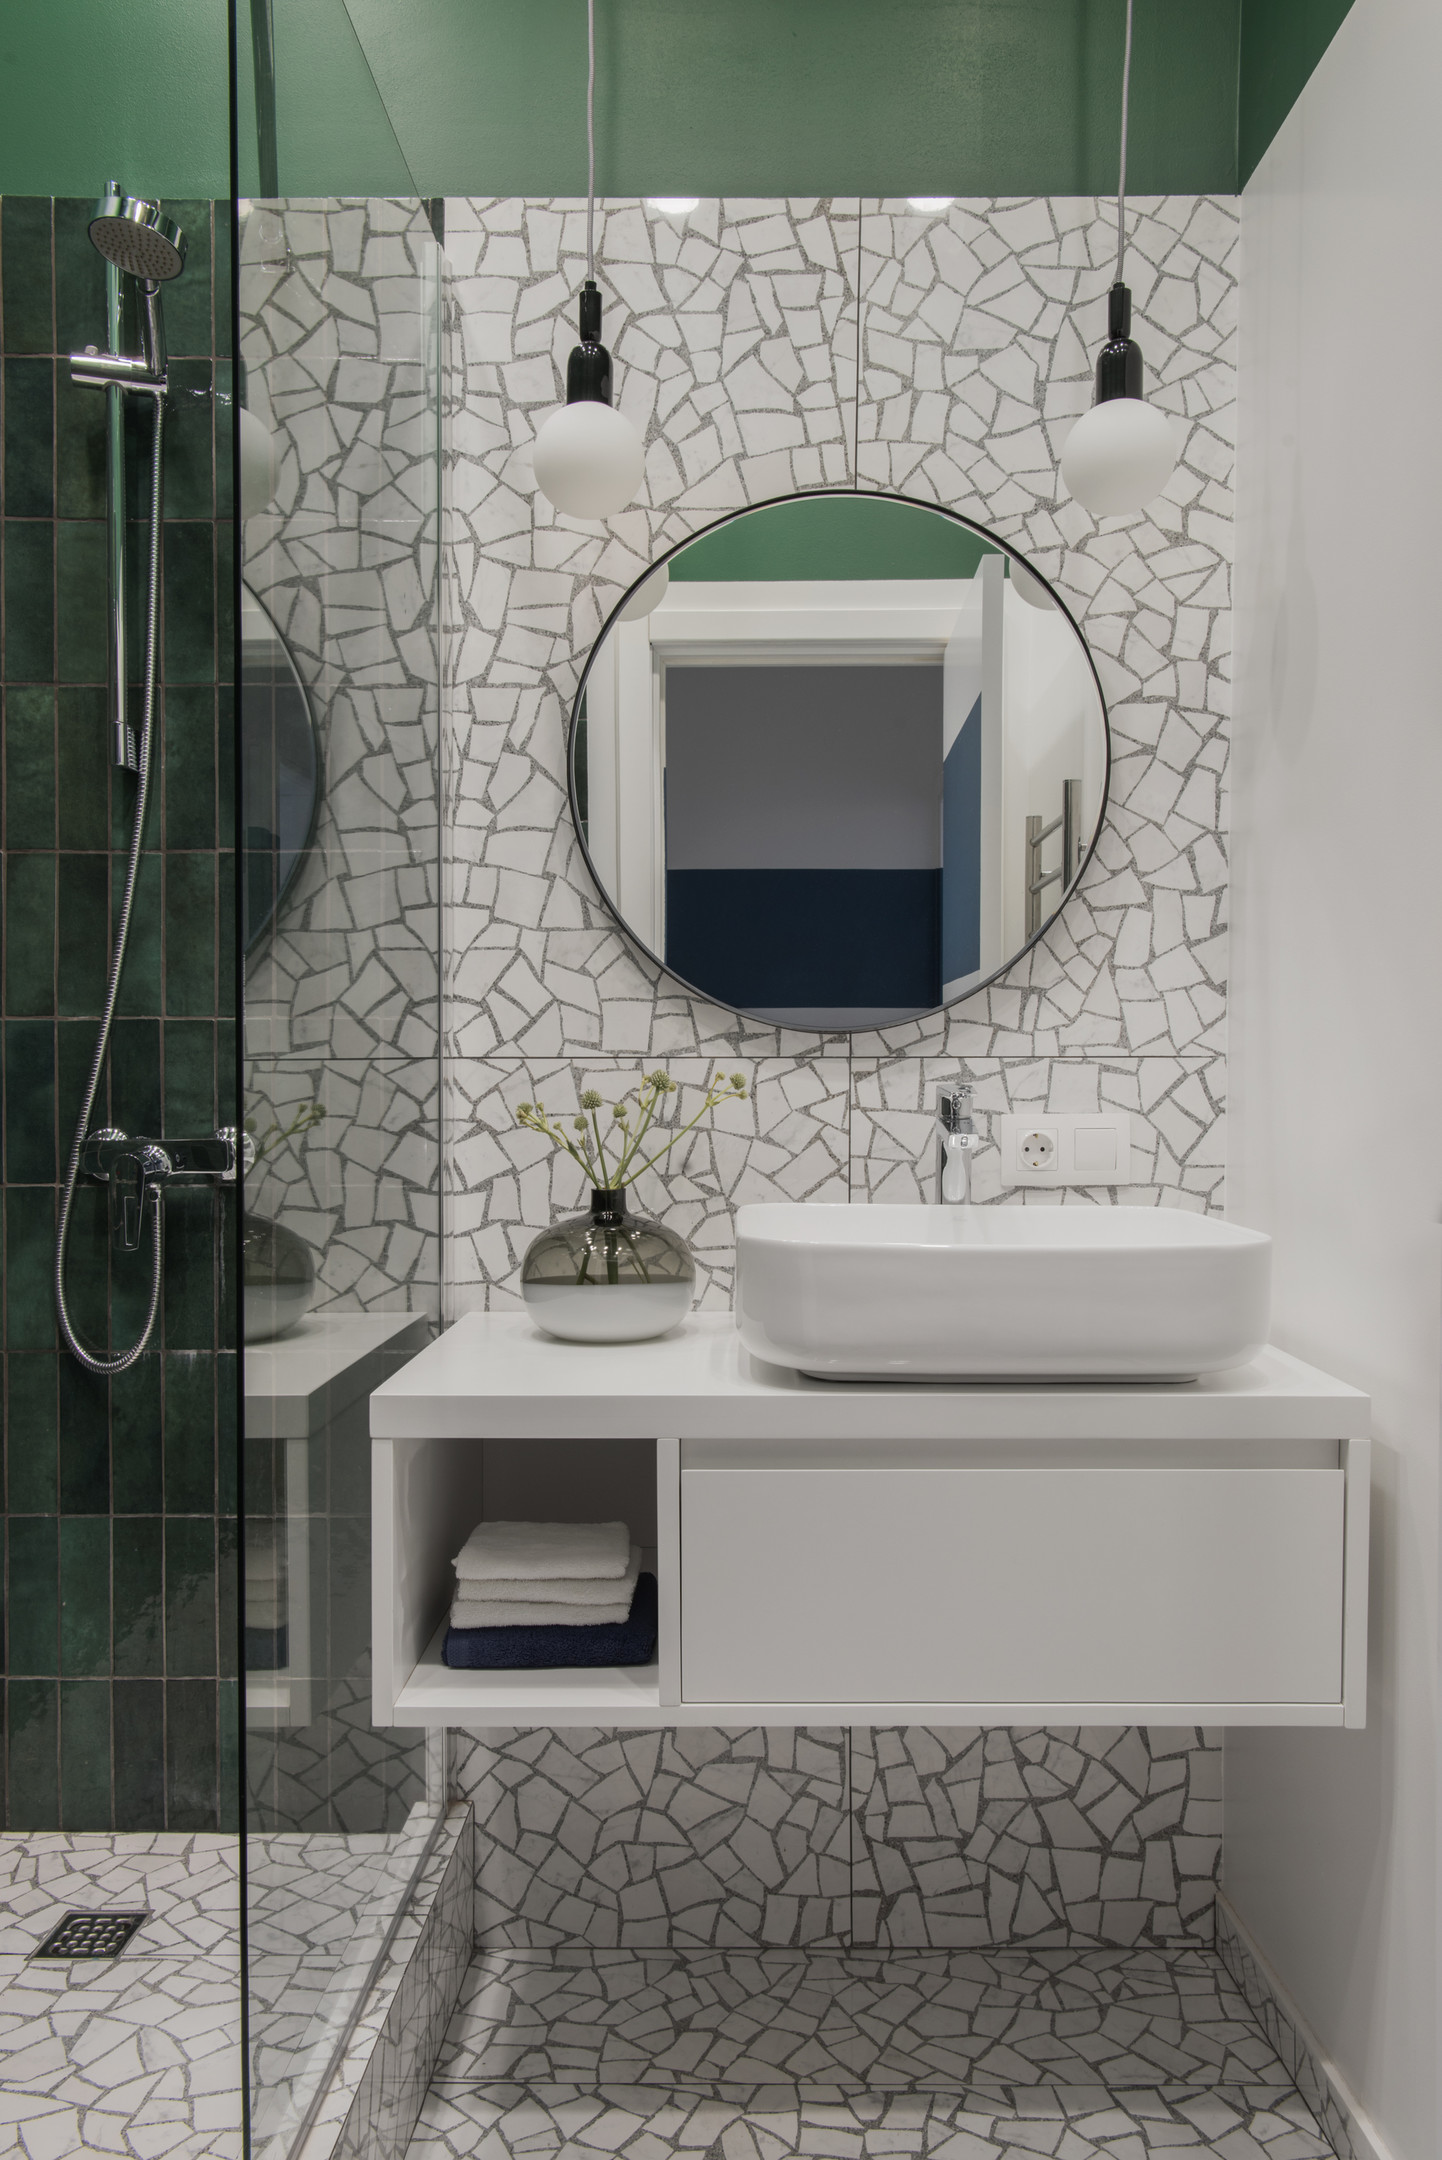 Tường và sàn phòng tắm được ốp bằng gạch họa tiết tương đồng với hành lang lối vào. Buồng tắm đứng ốp gạch thẻ dọc màu xanh ngọc lục bảo, phân vùng với tủ vanily bằng cửa kính trong suốt thoáng sáng.